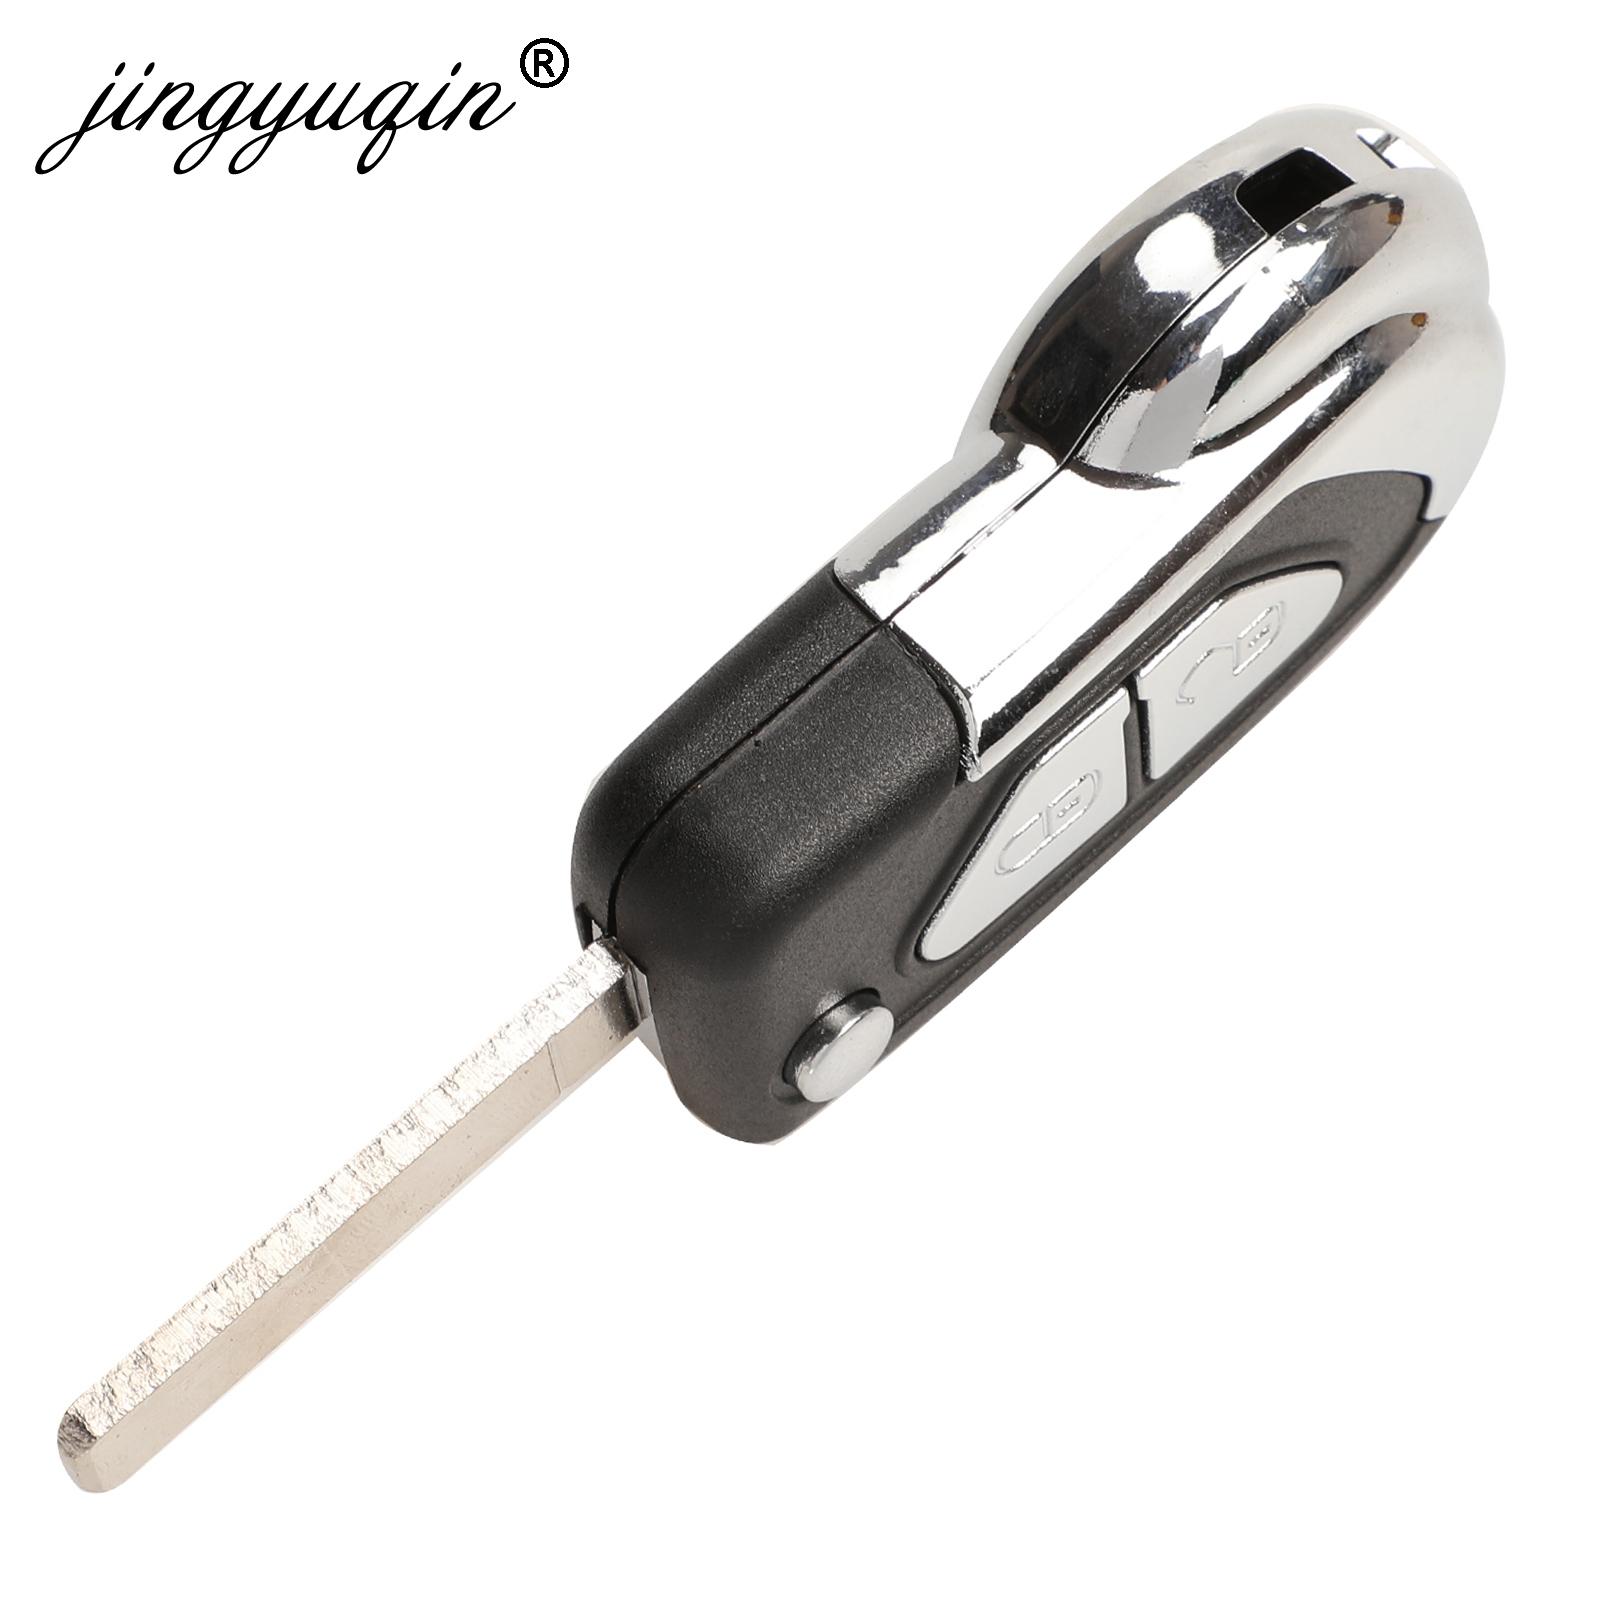 Изображение товара: Jingyuqin для Citroen DS3, 2 кнопки, Uncut VA2, чехол с лезвием для ключей, чехол с дистанционным управлением